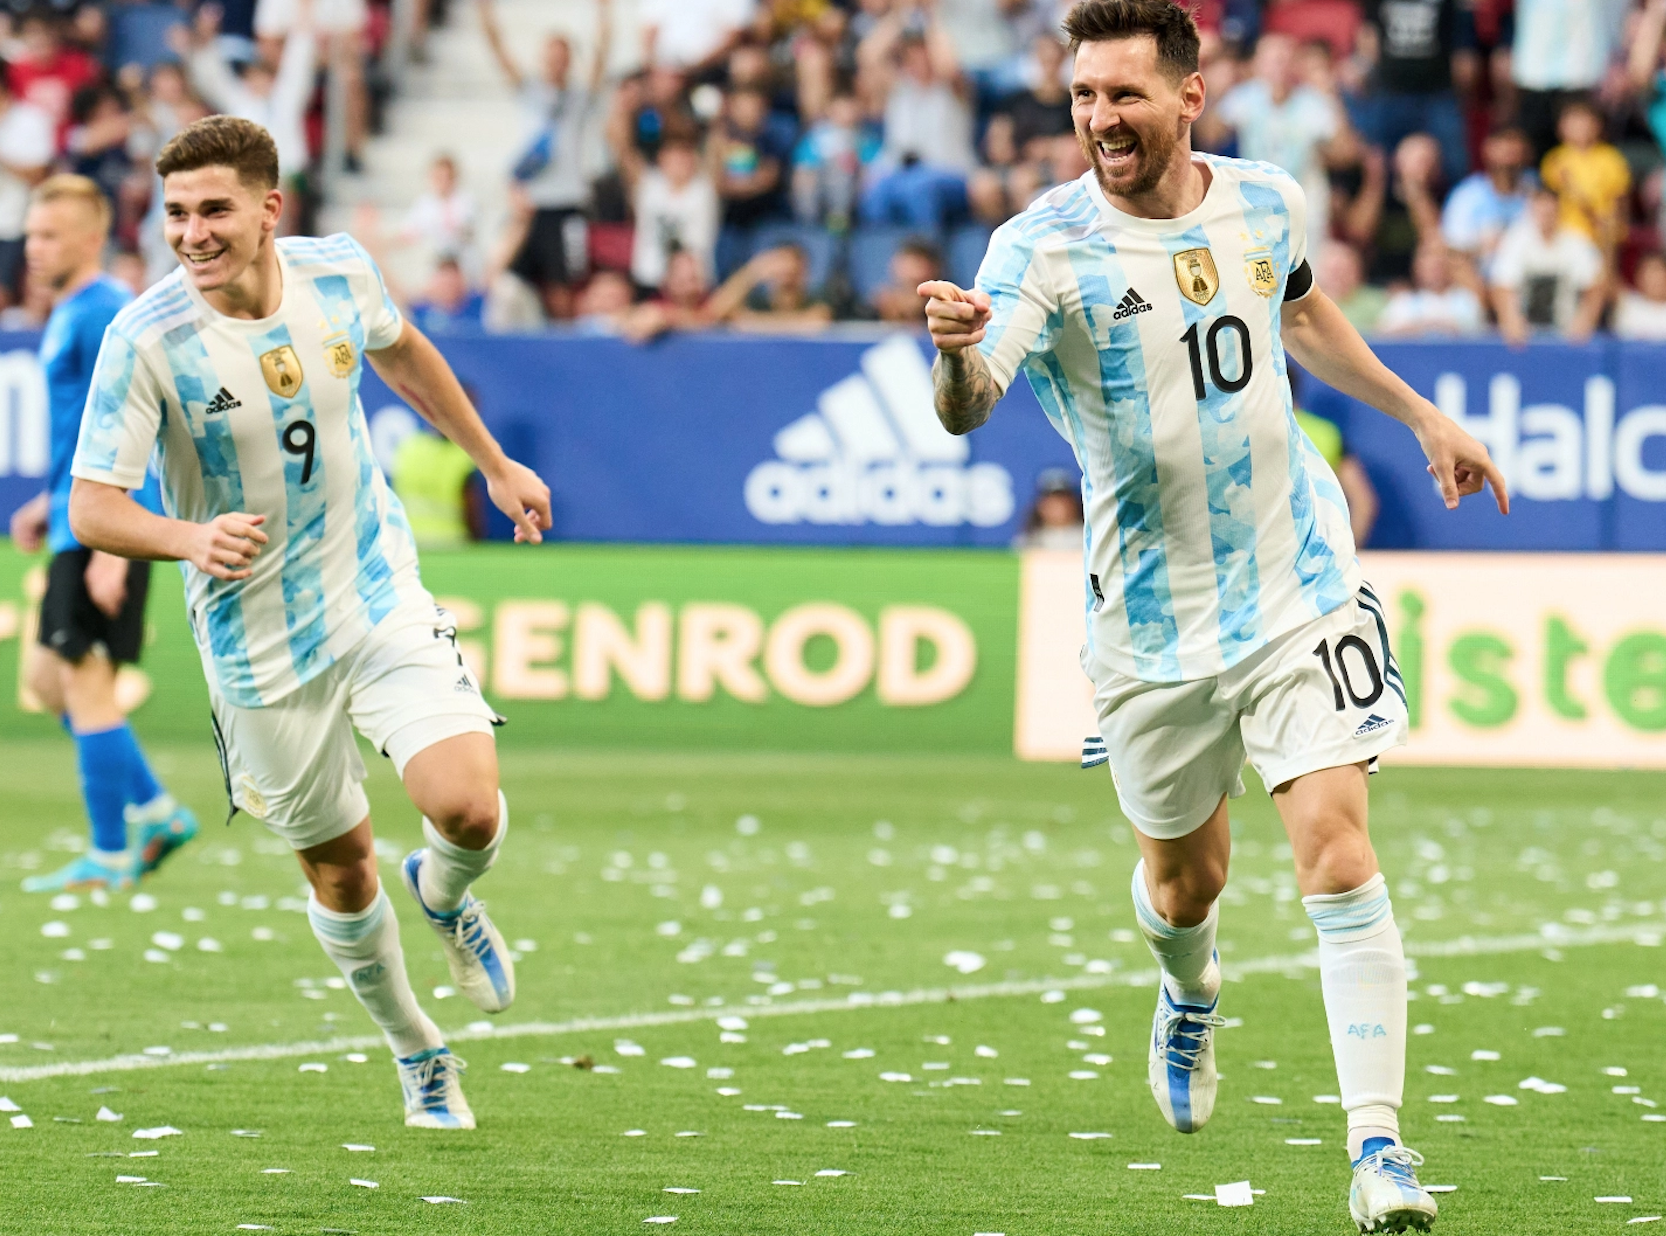 Bức ảnh liên quan đến Messi và ĐT Argentina sẽ khiến người xem thực sự phấn khích. Đội tuyển Argentina luôn là một đối thủ đáng gờm trên sân cỏ, và Messi là một trong những đội trưởng nổi bật nhất trong lịch sử đội bóng này. Cùng xem những khoảnh khắc đáng nhớ của Messi và đội tuyển Argentina trên bức ảnh này nhé!